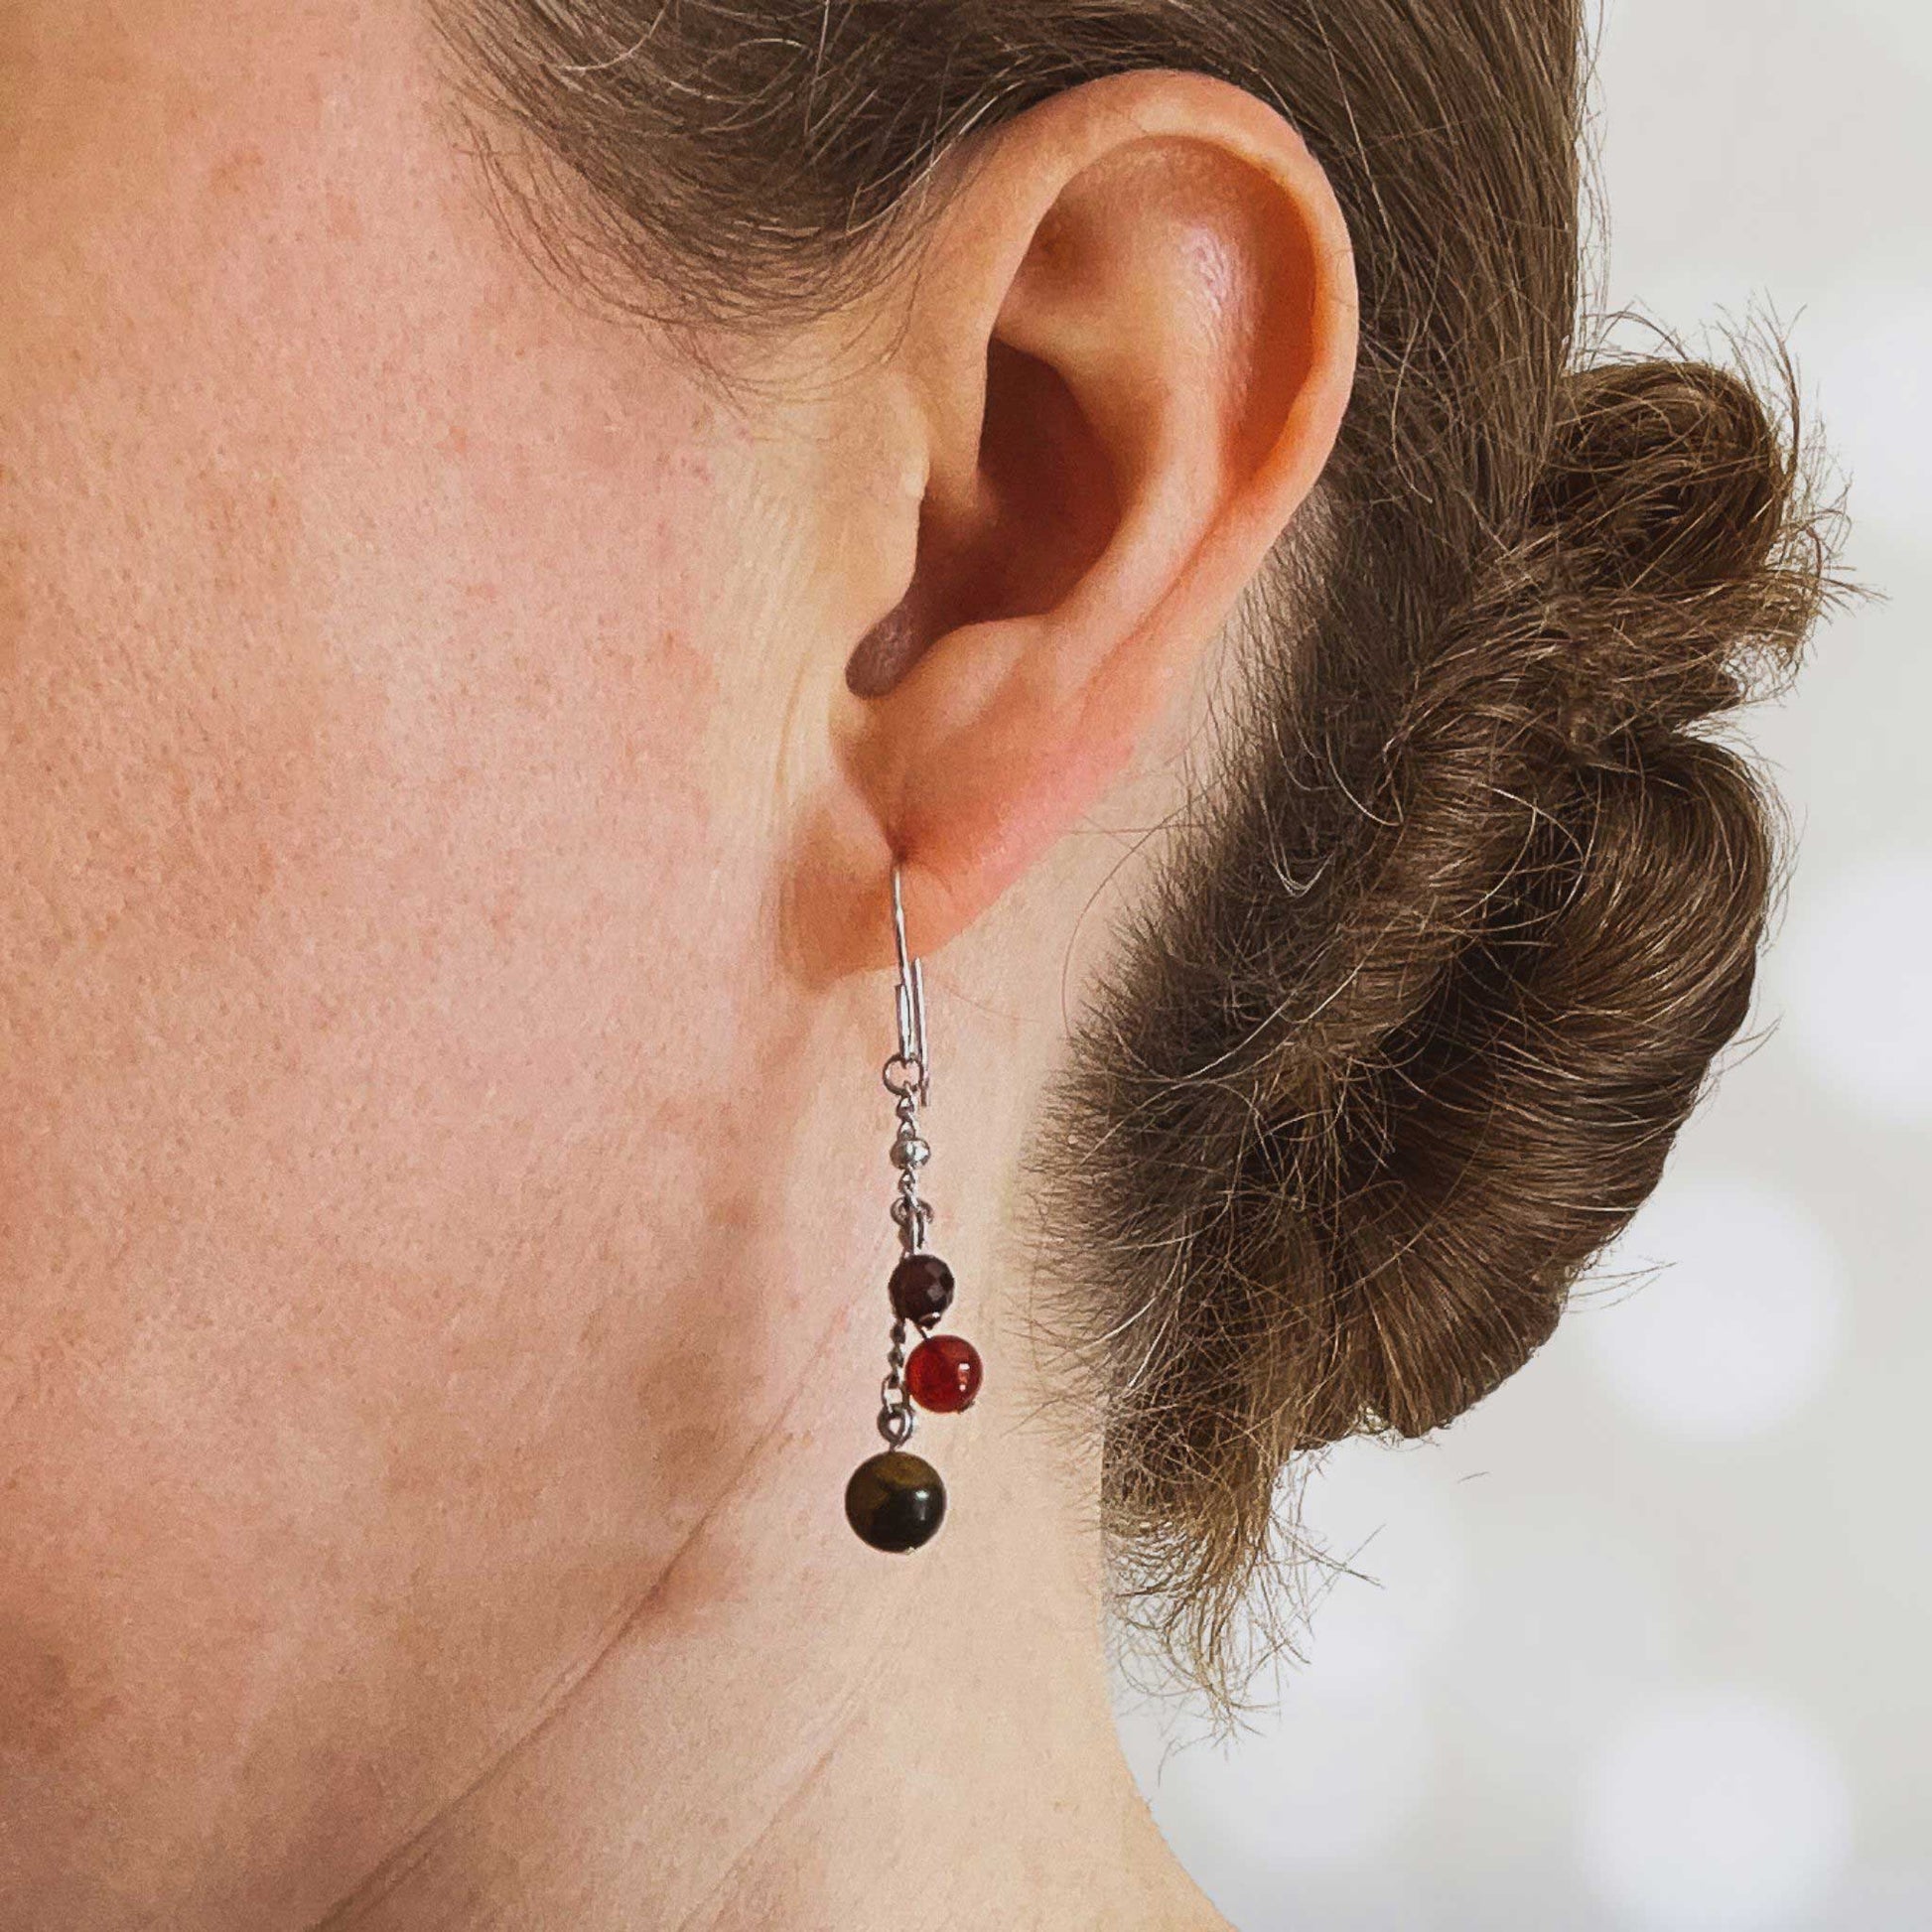 Woman wearing dark gemstone bead drop earring in earlobe